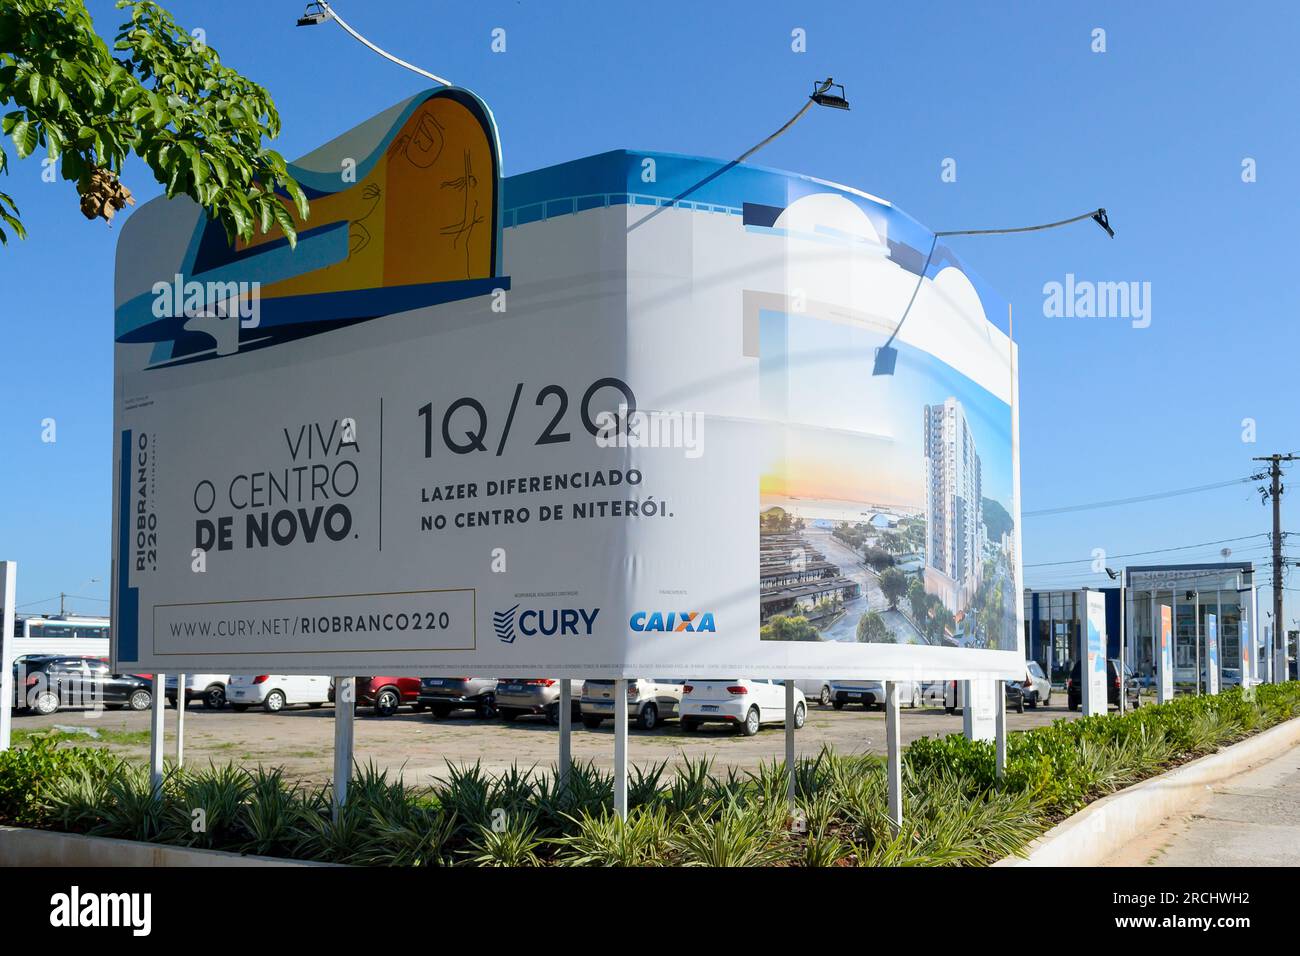 Niteroi, Rio de Janeiro, Brazil - July 1, 2023: Large advertisement billboard in a city corner. It reads Viva O Centro de Novo Stock Photo